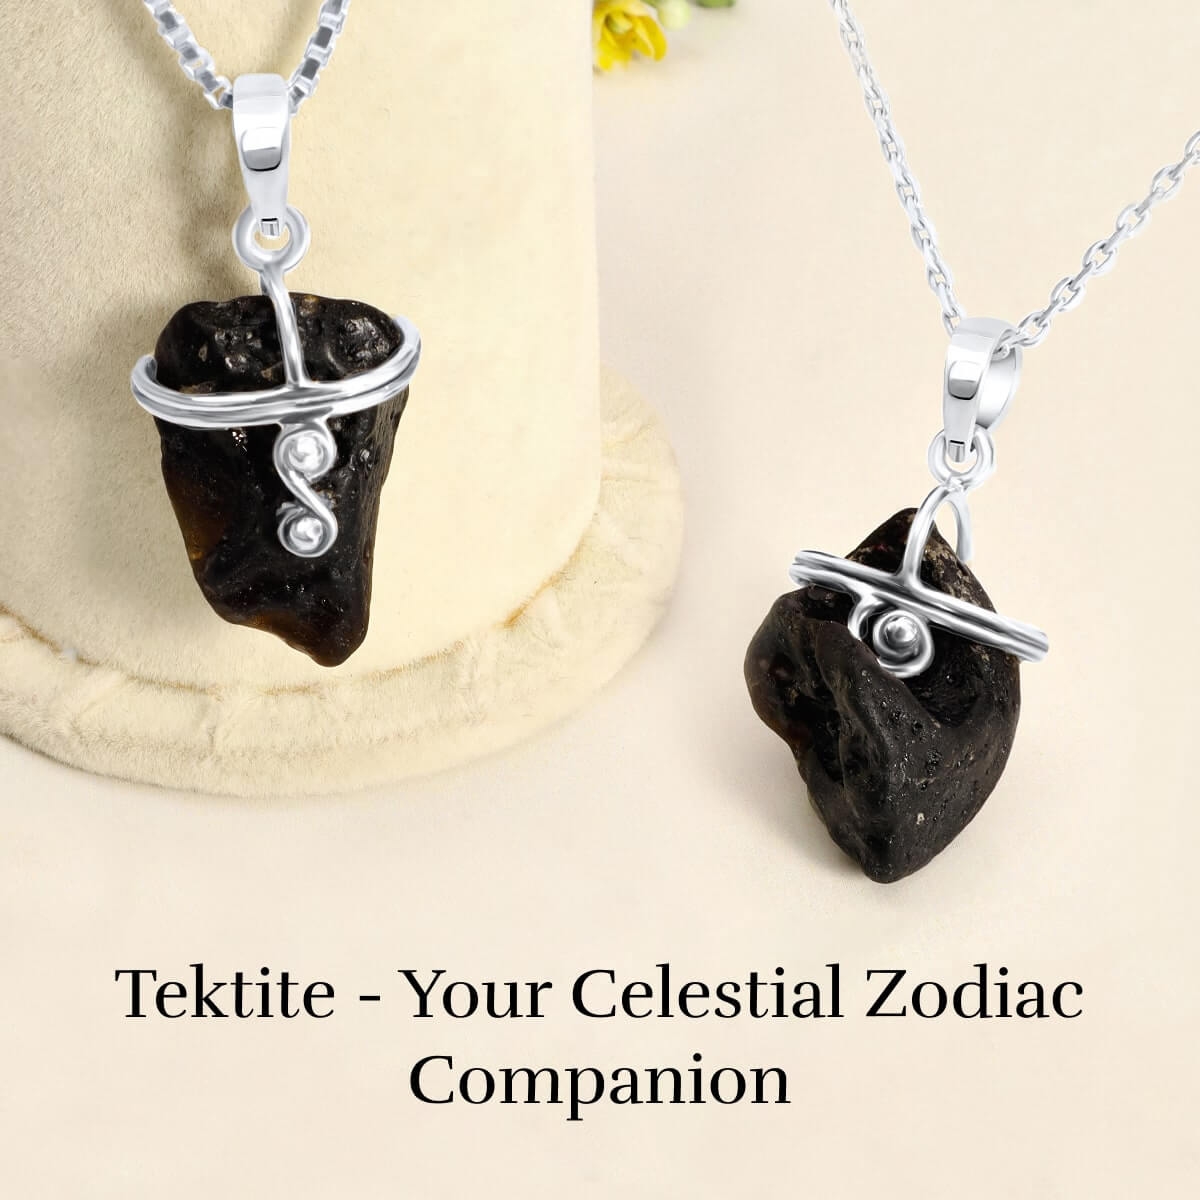 Zodiac sign of Tektite gemstone